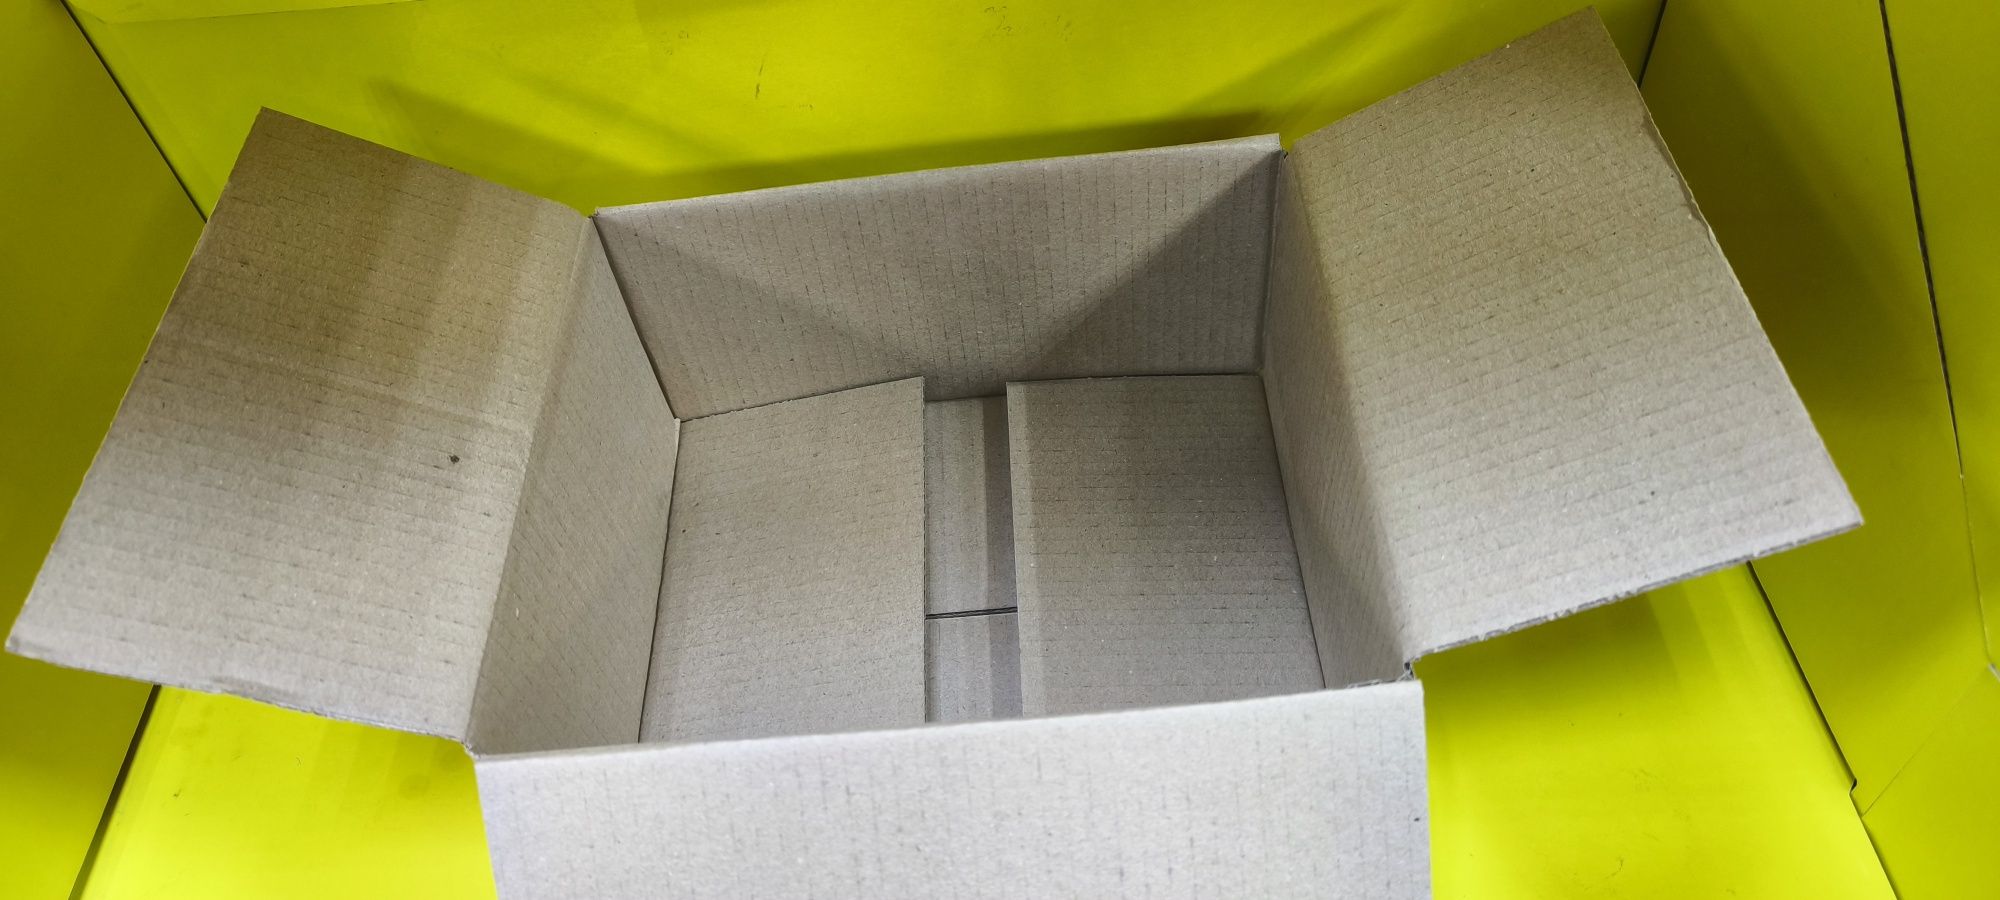 Картонна коробка для пакування 26*22*12 см Б/У в розібраному стані